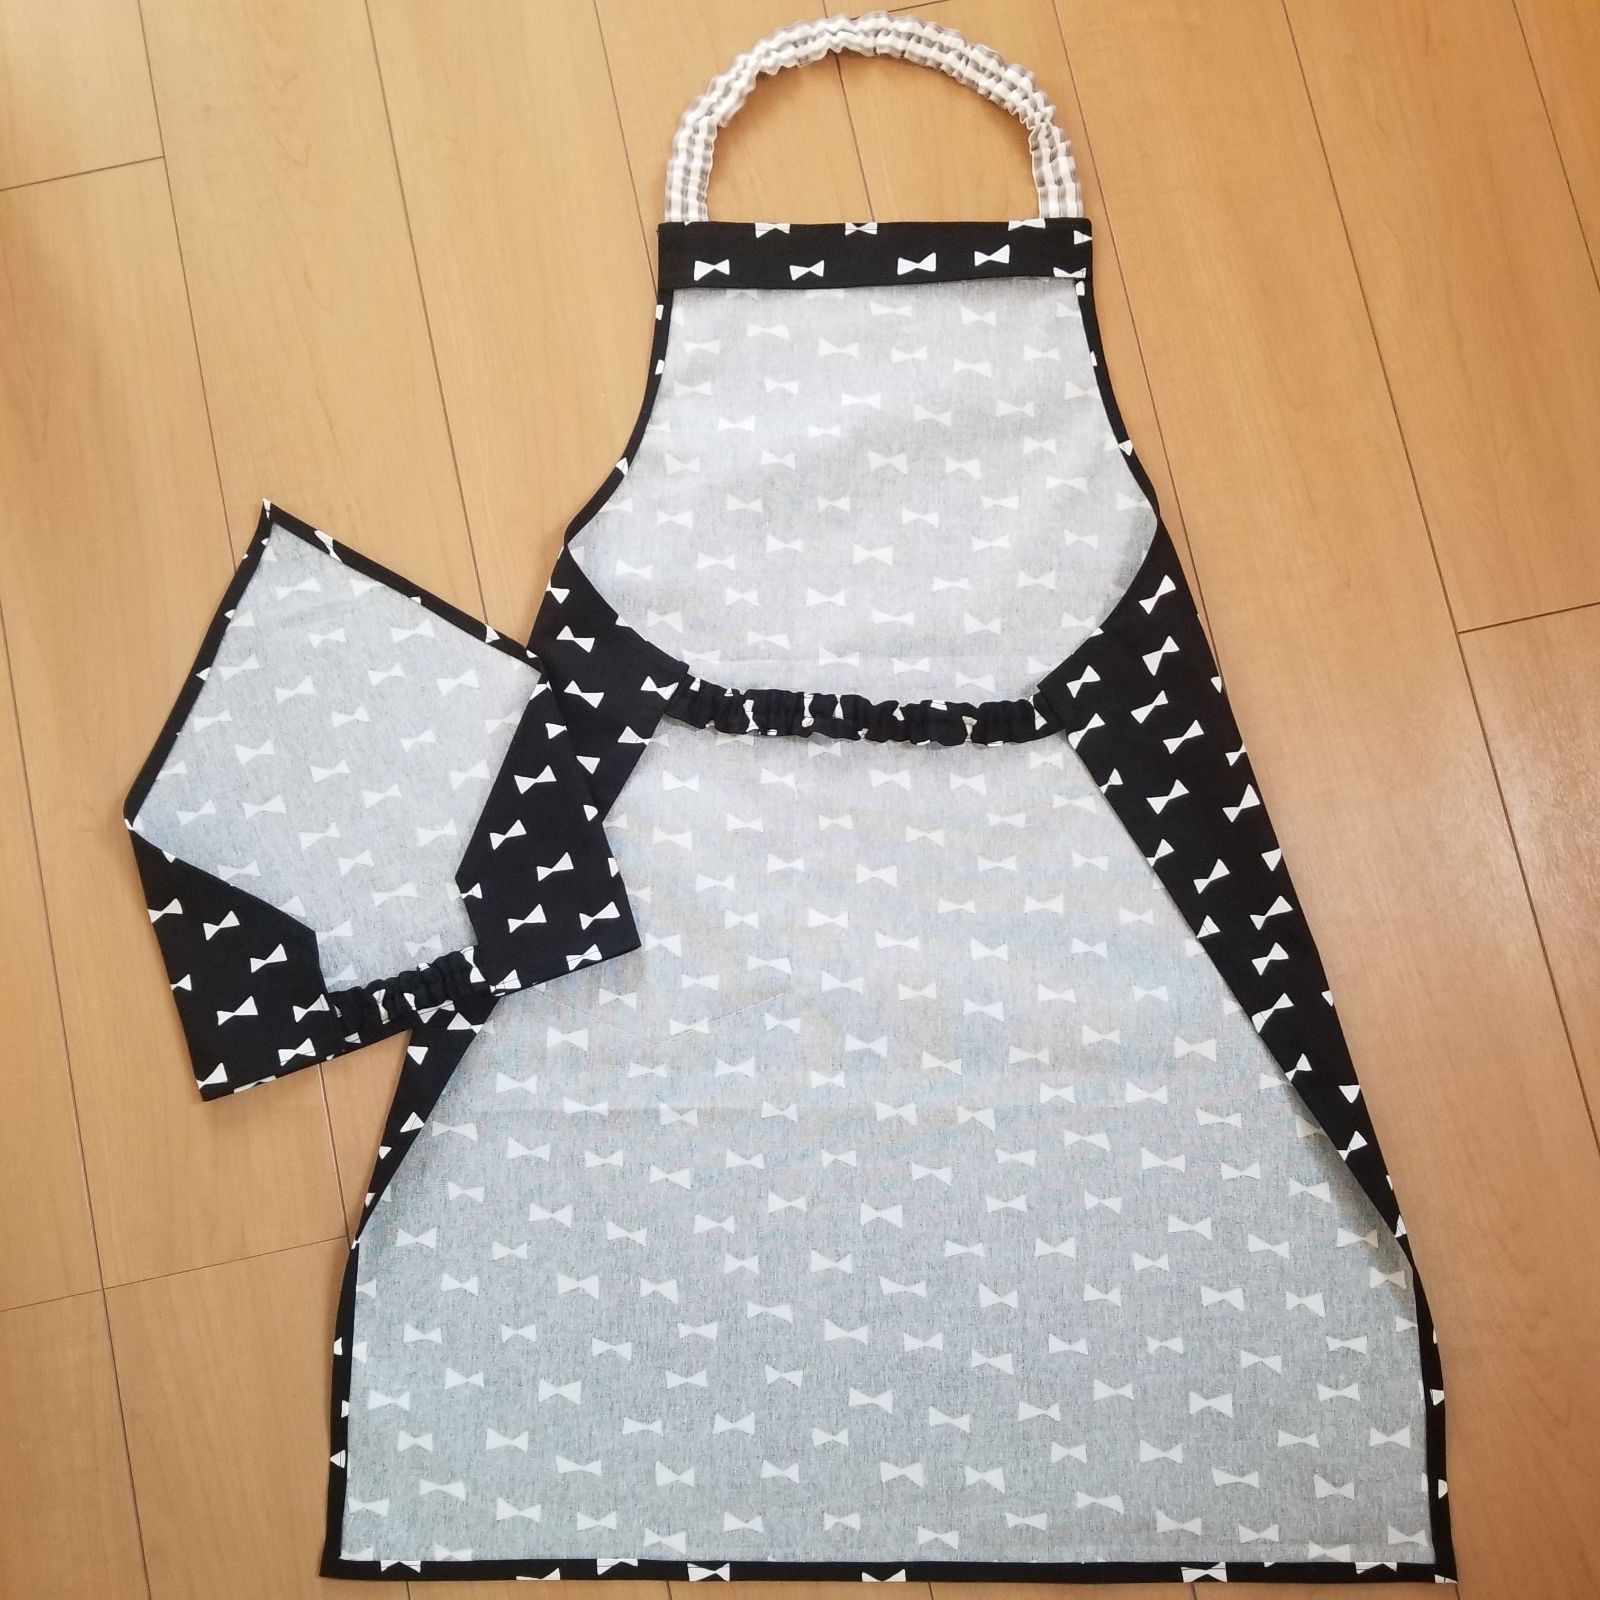 単品販売／受注生産 エプロン三角巾セット リボン 160 - ファッション雑貨